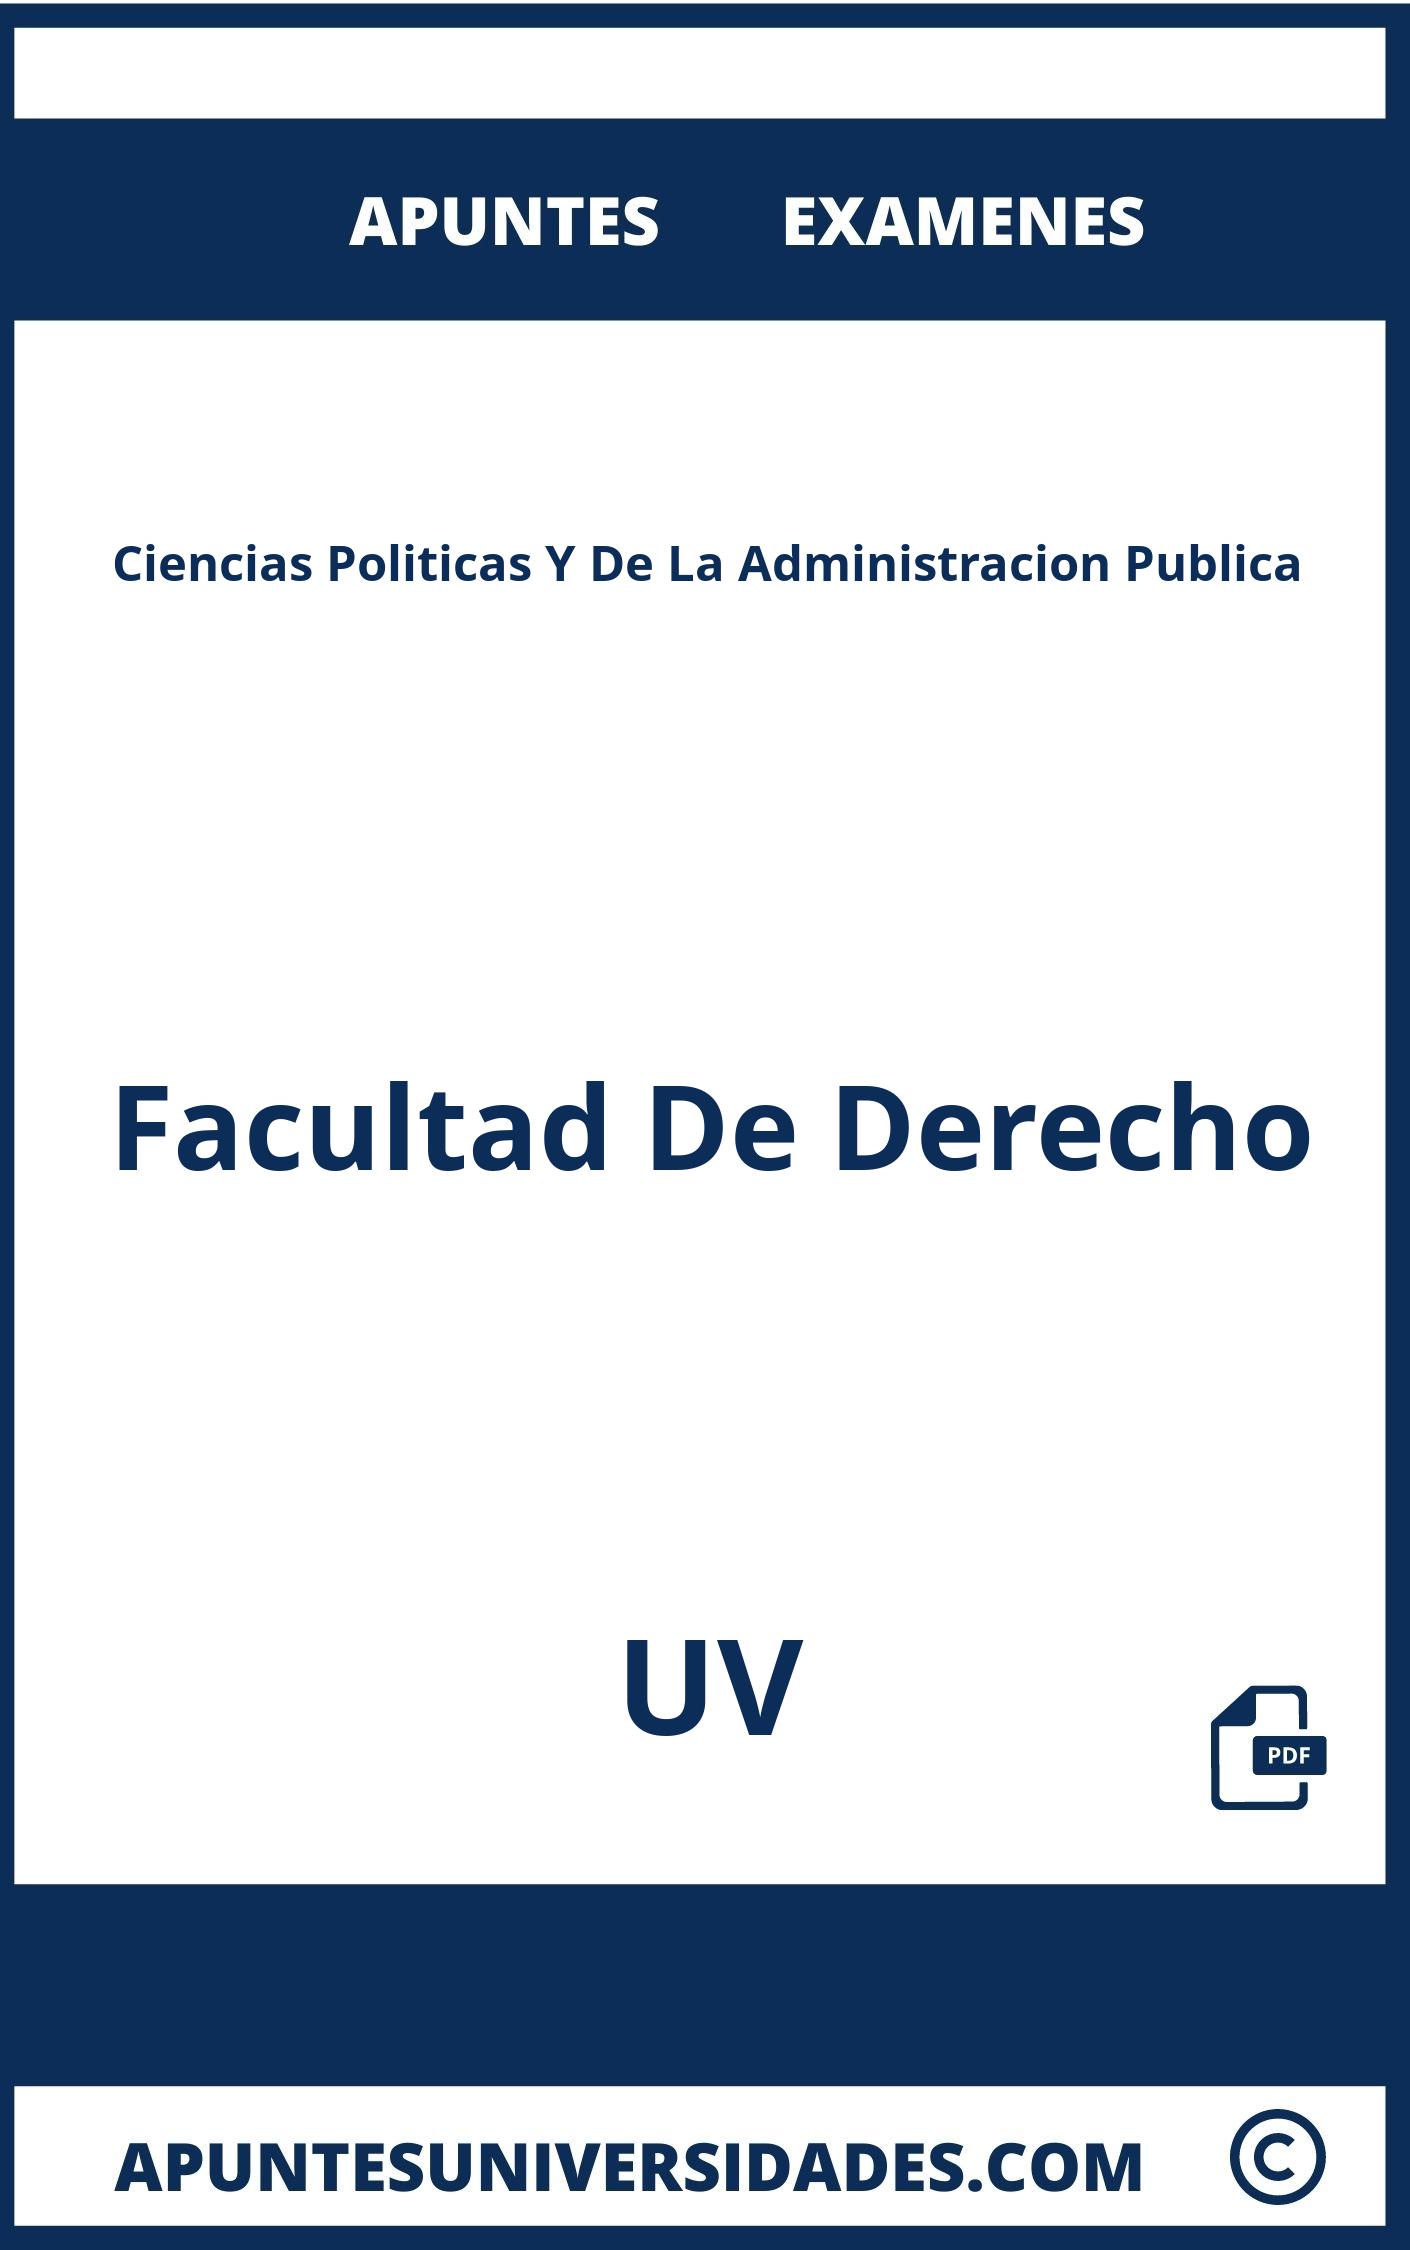 Examenes y Apuntes de Ciencias Politicas Y De La Administracion Publica UV